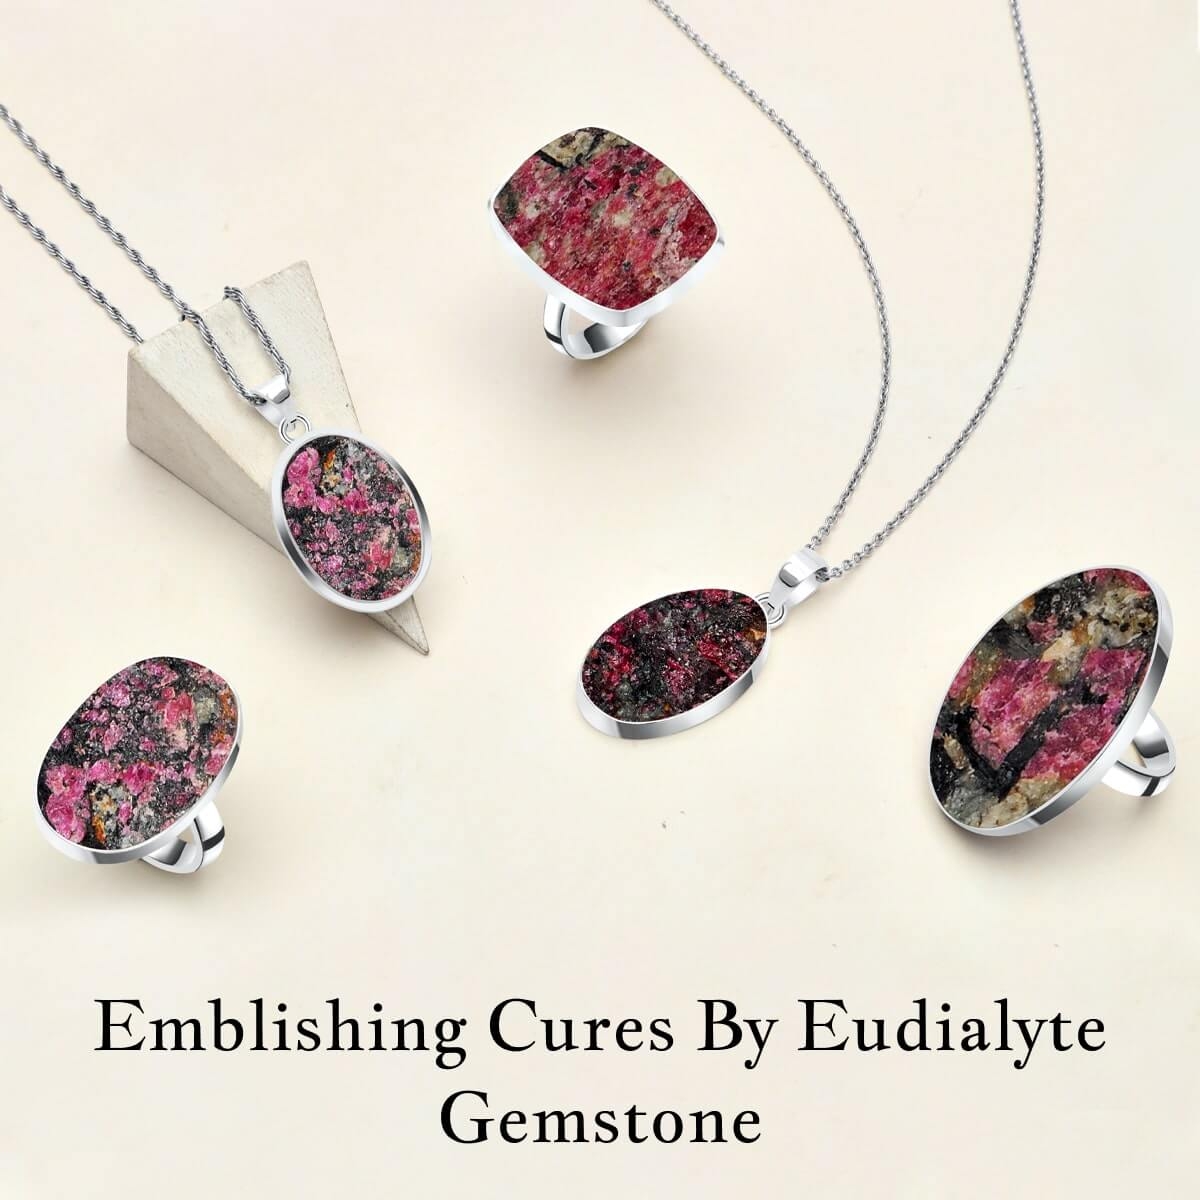 Healing Properties of Eudialyte Gemstone